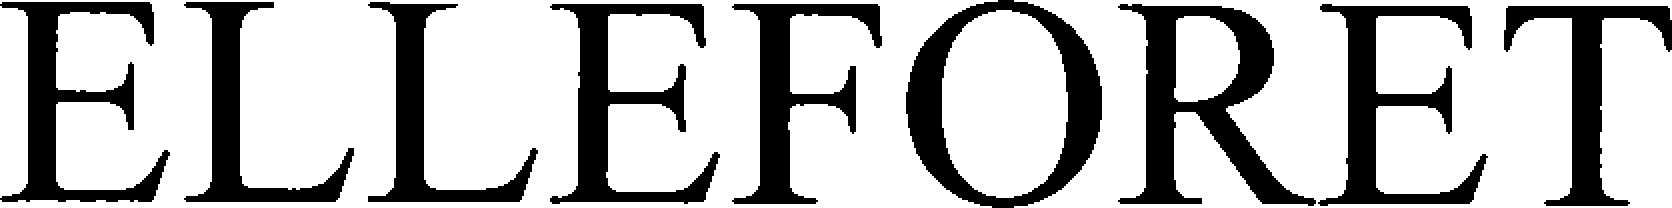 Trademark Logo ELLEFORET